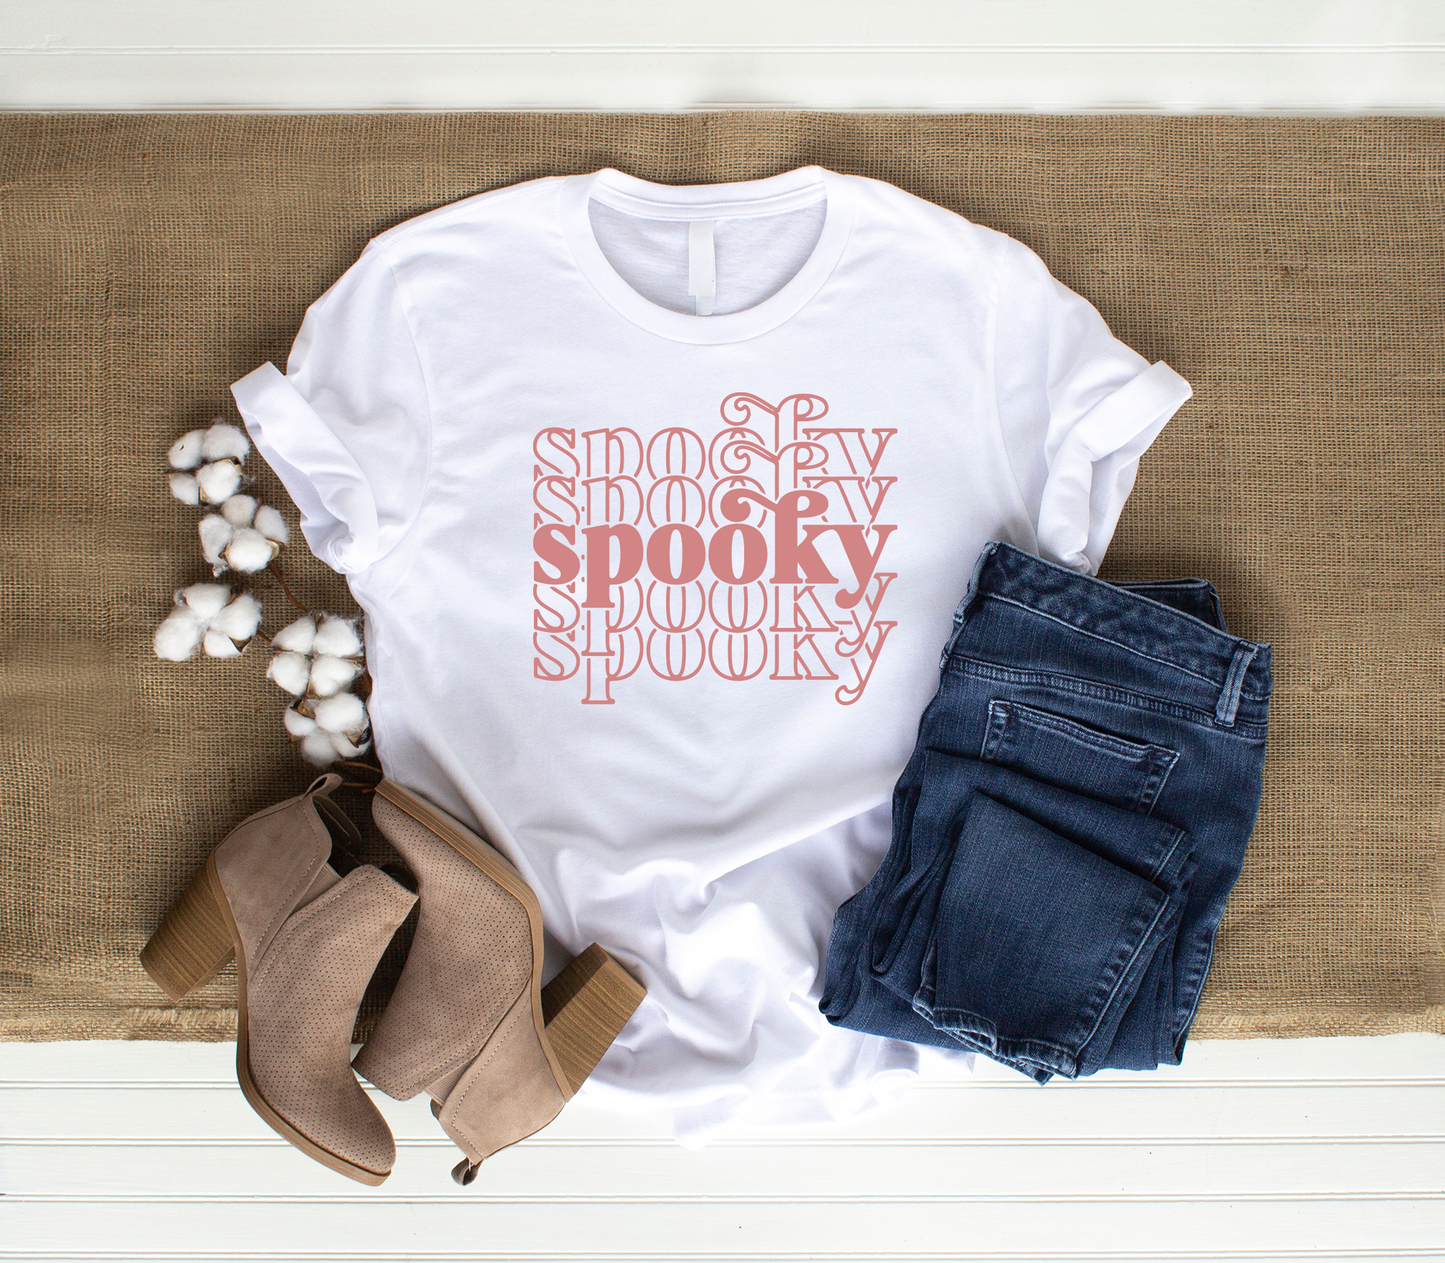 Spooky Spooky Spooky T-Shirt